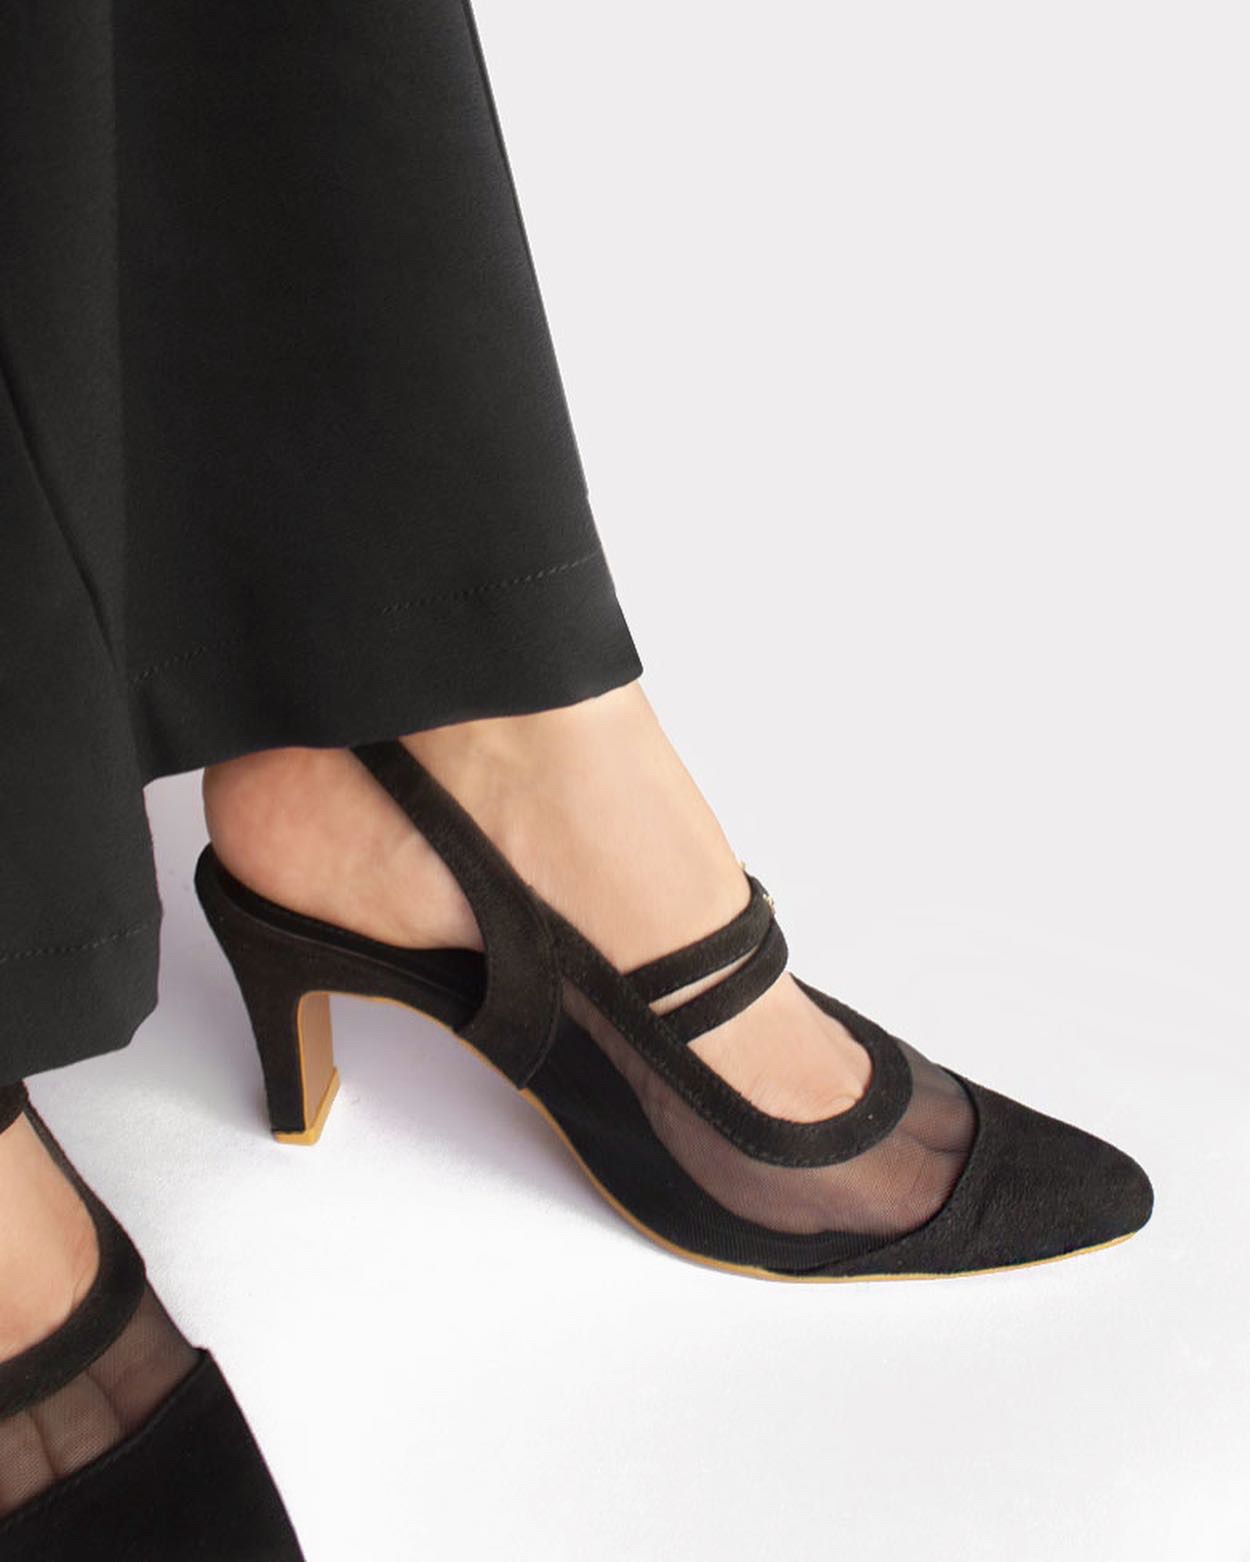 Black mesh pointed heels